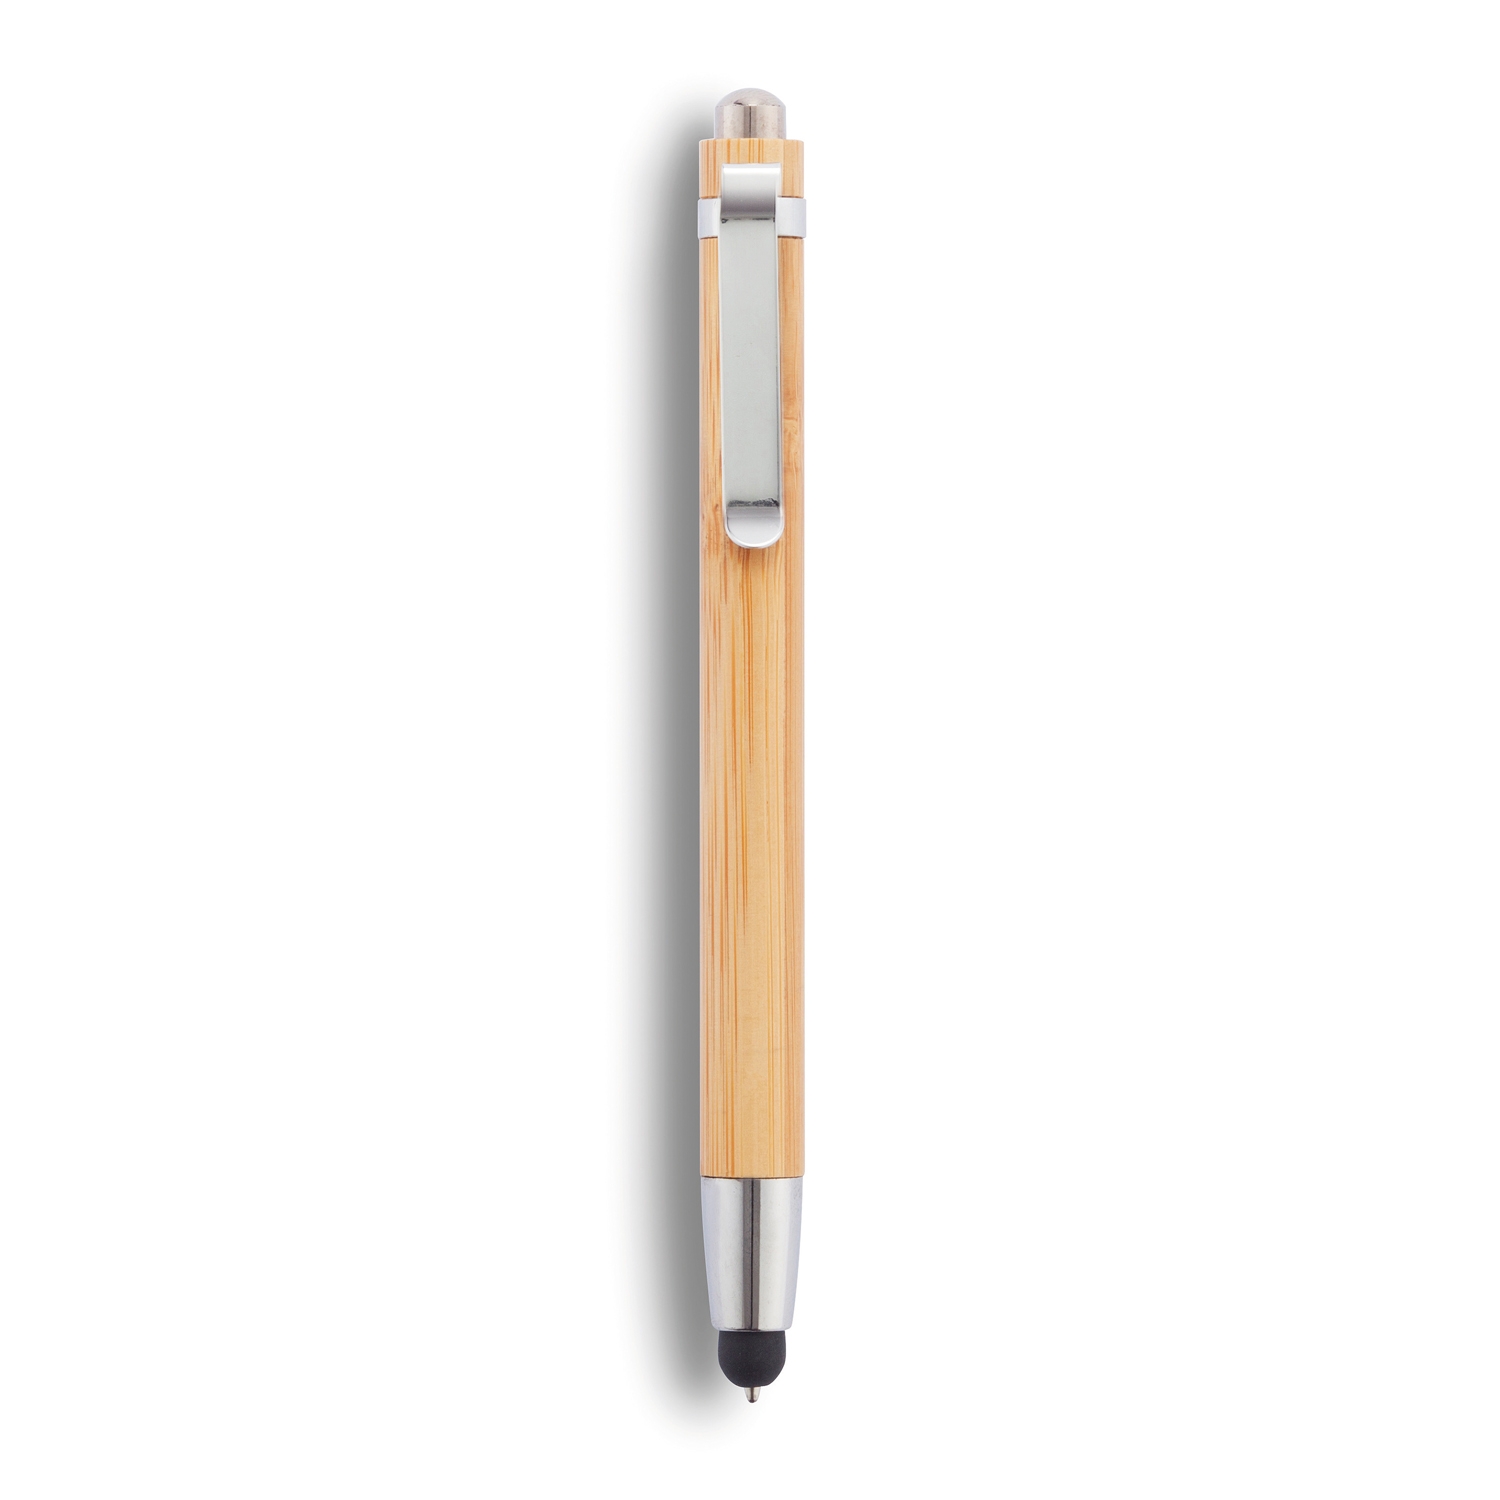 Ручка-стилус из бамбука, коричневый, дерево, металл